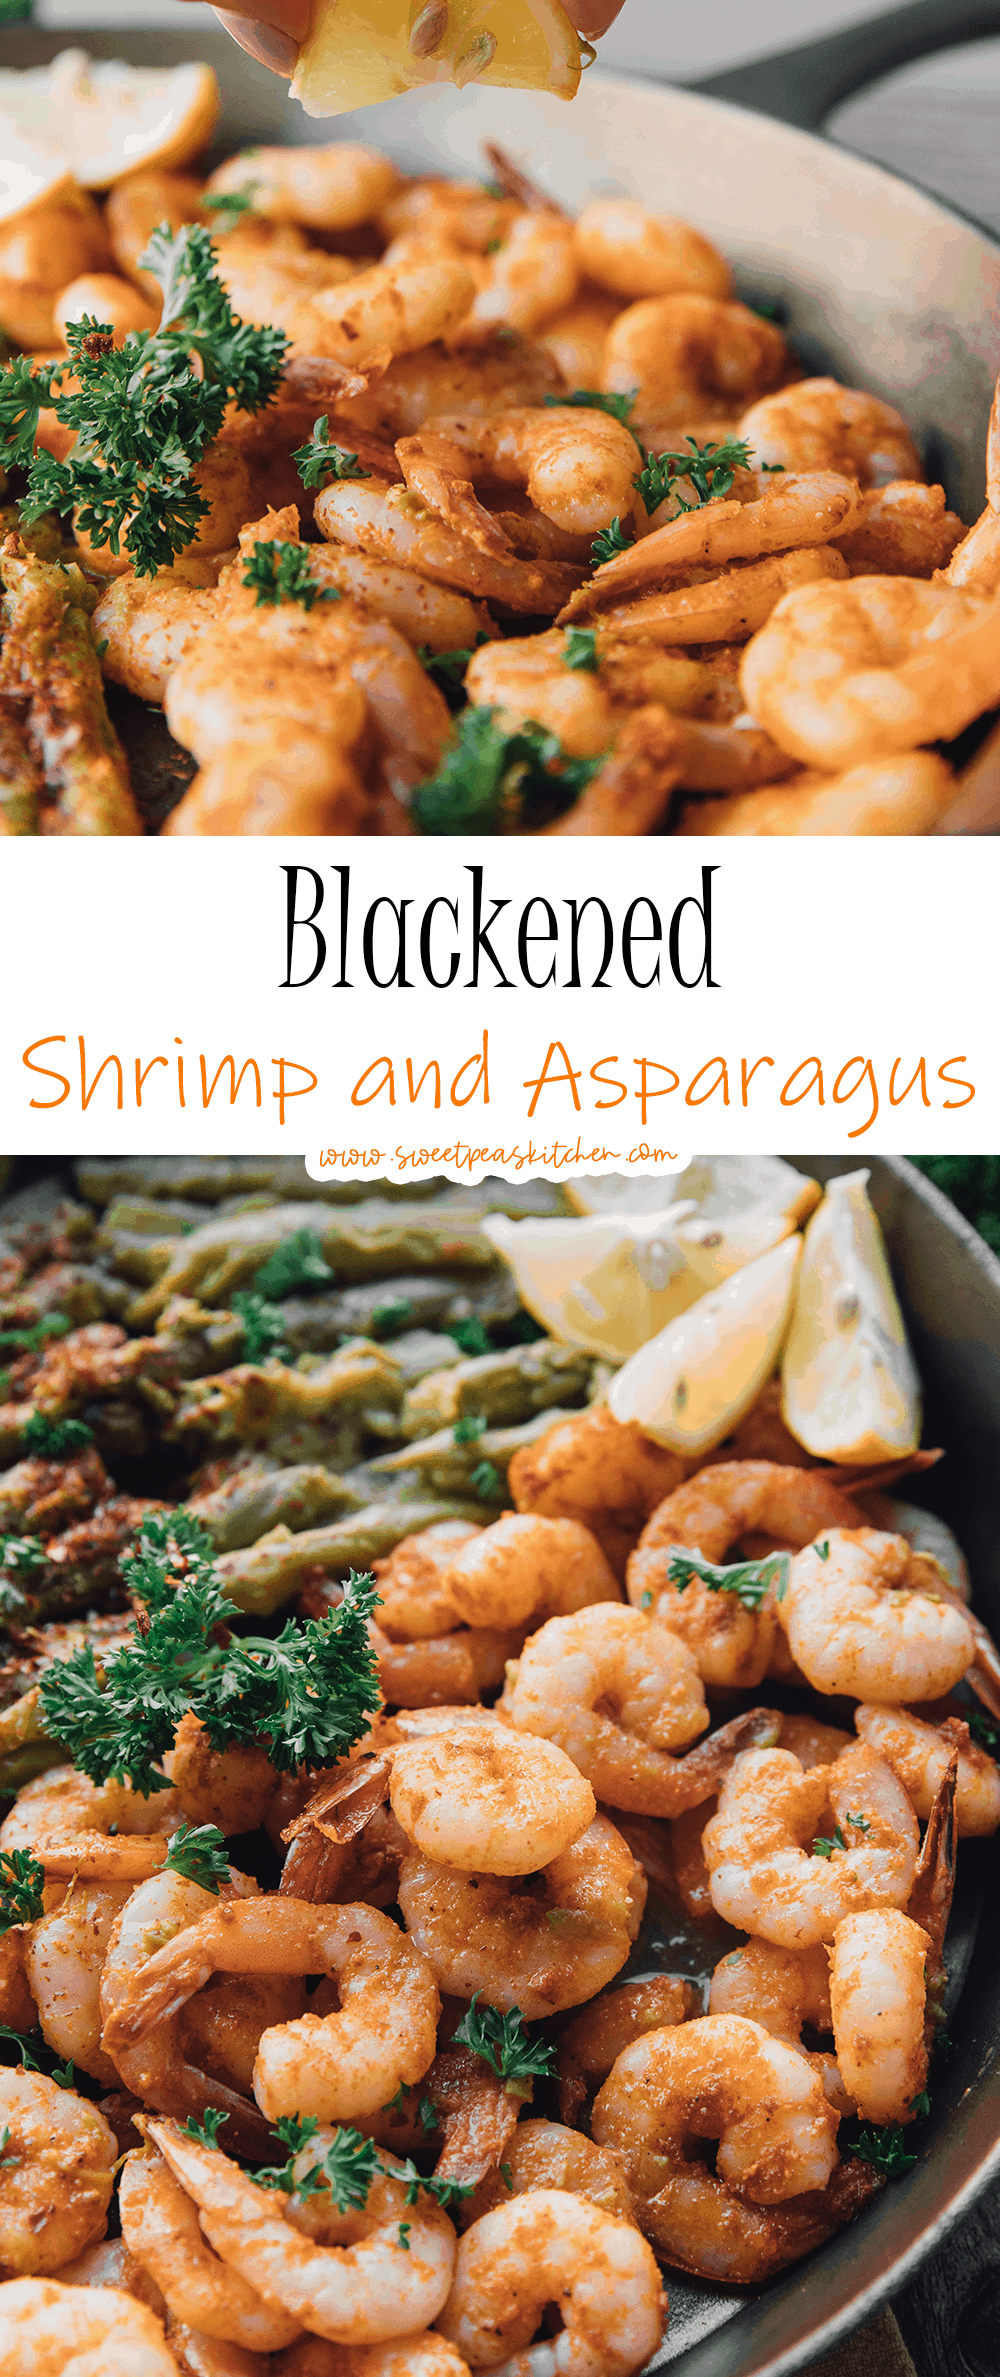 Blackened Shrimp and Asparagus